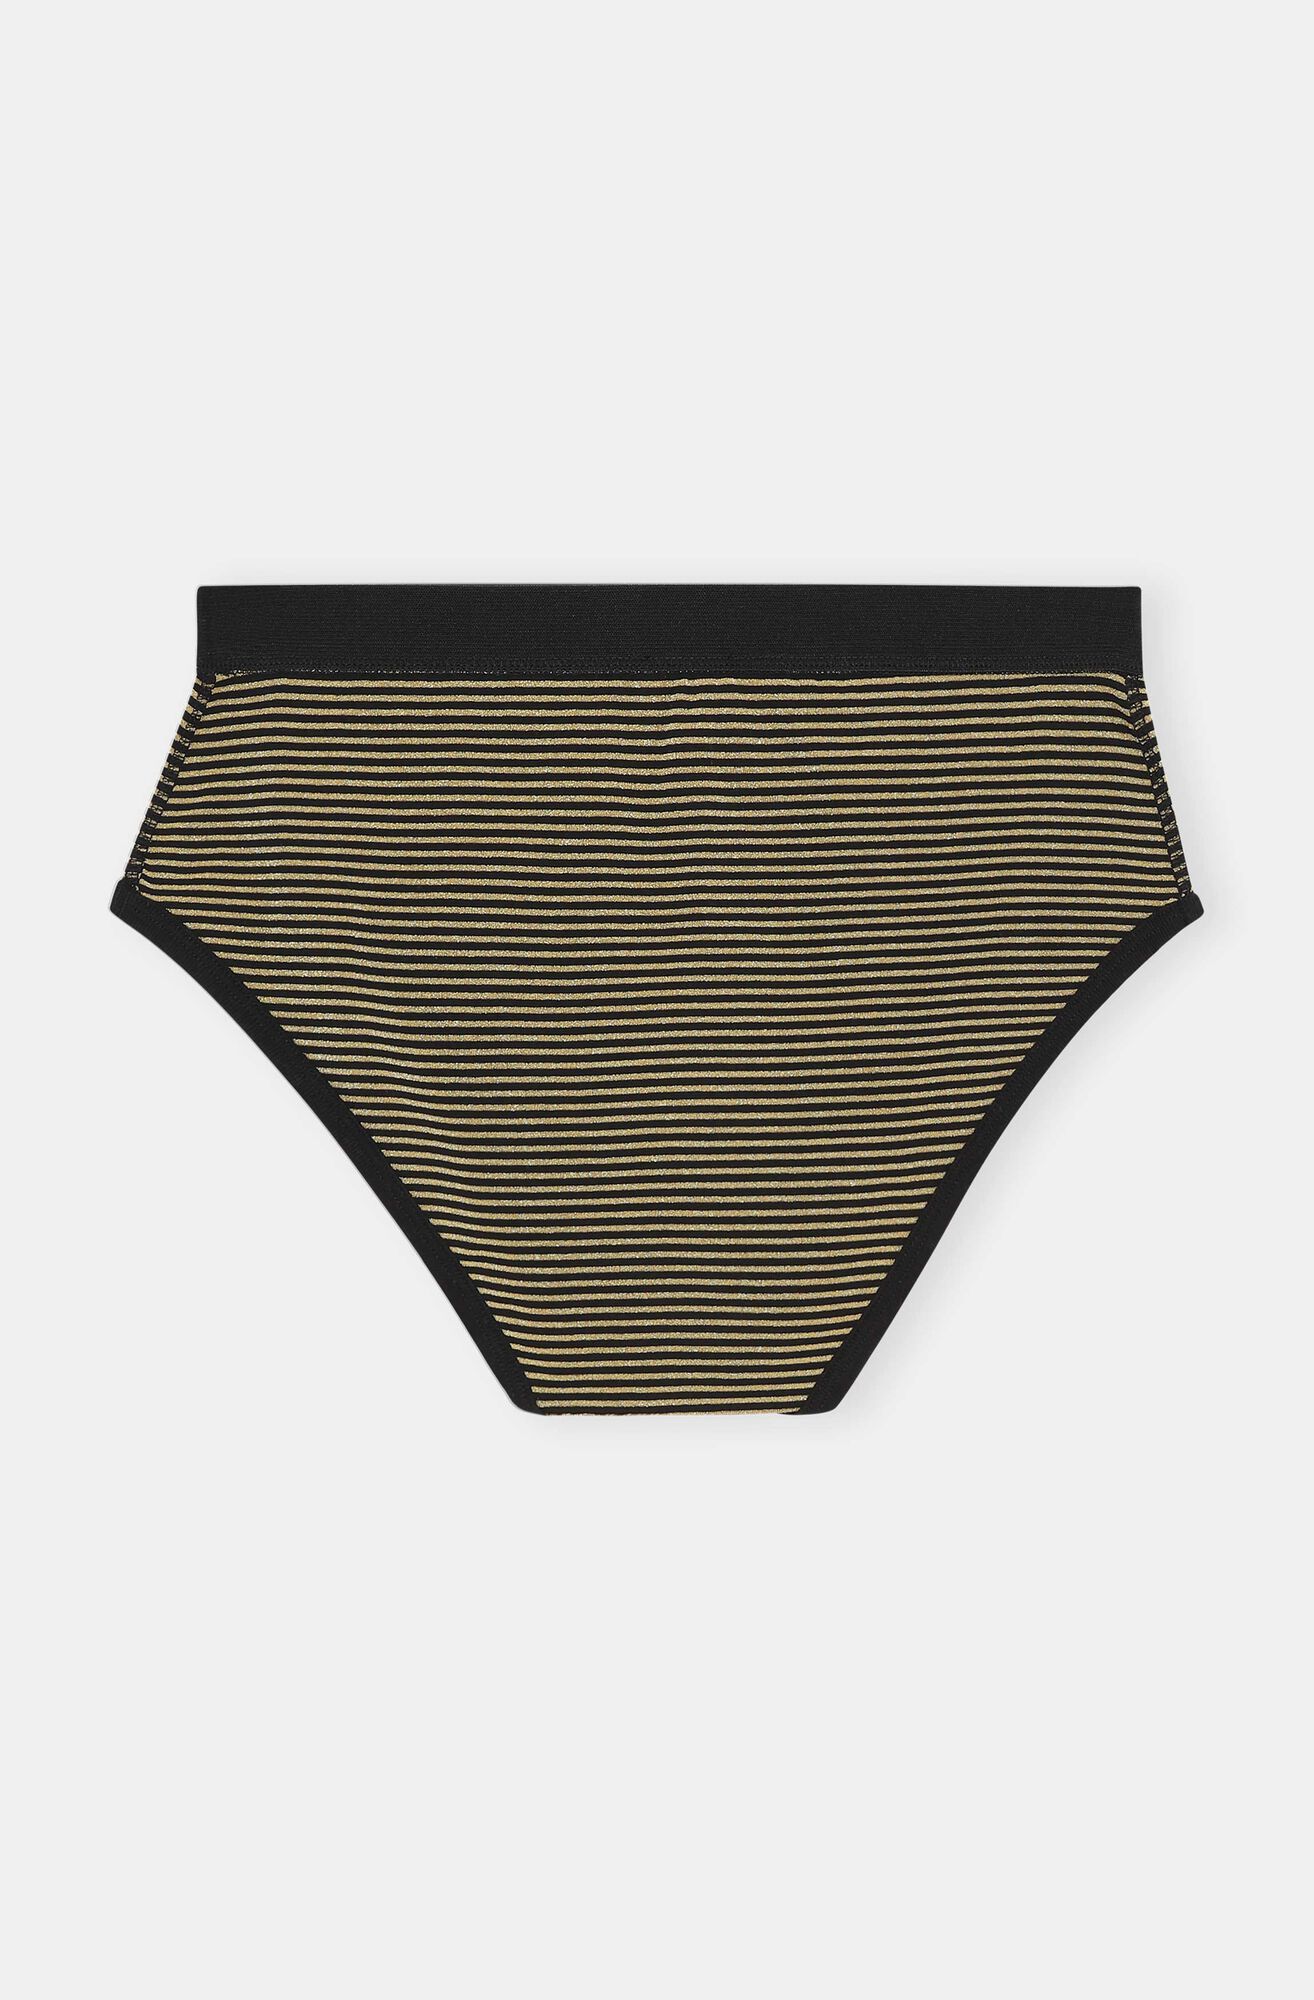 Lurex-undertøj i økologisk bomuld, Organic Cotton, in colour Black Stripes - 2 - GANNI